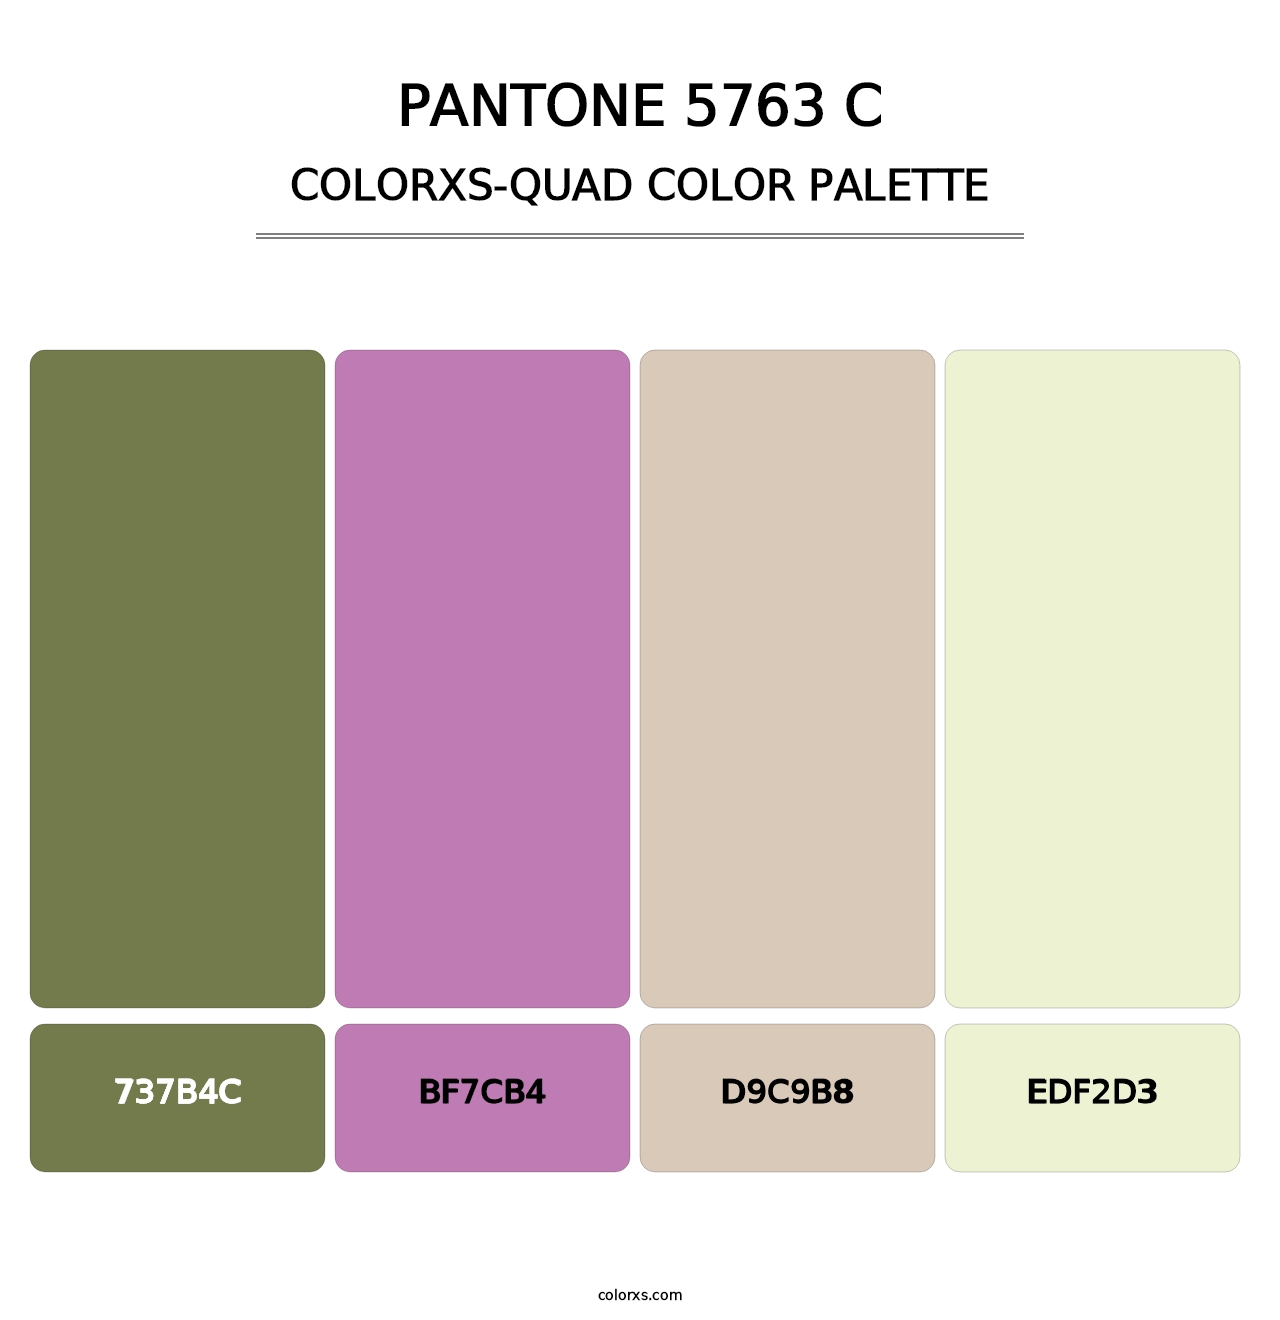 PANTONE 5763 C - Colorxs Quad Palette